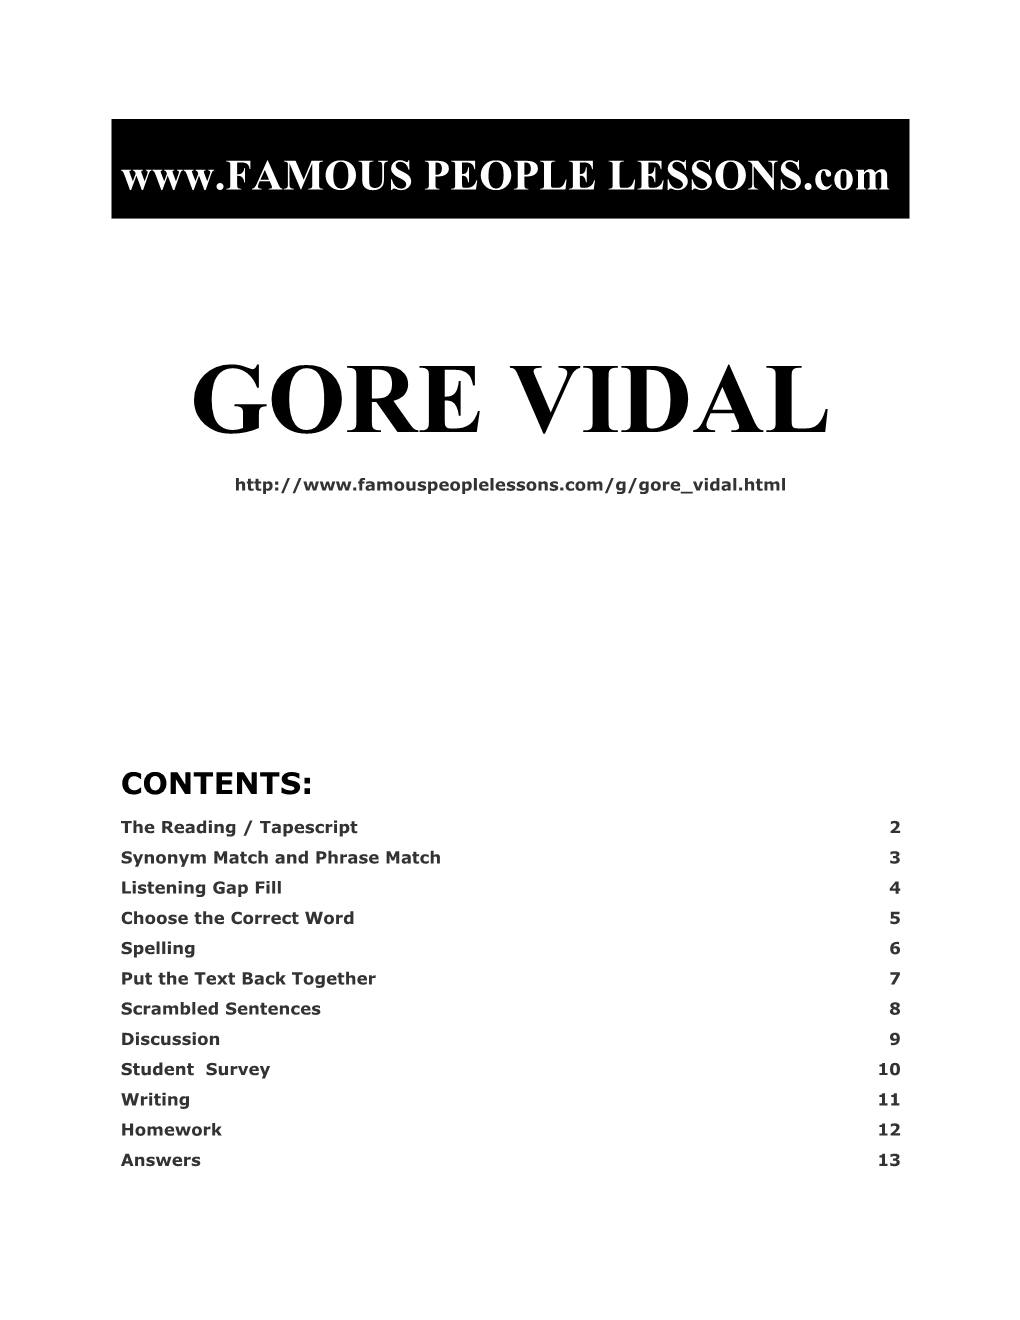 Famous People Lessons - Gore Vidal